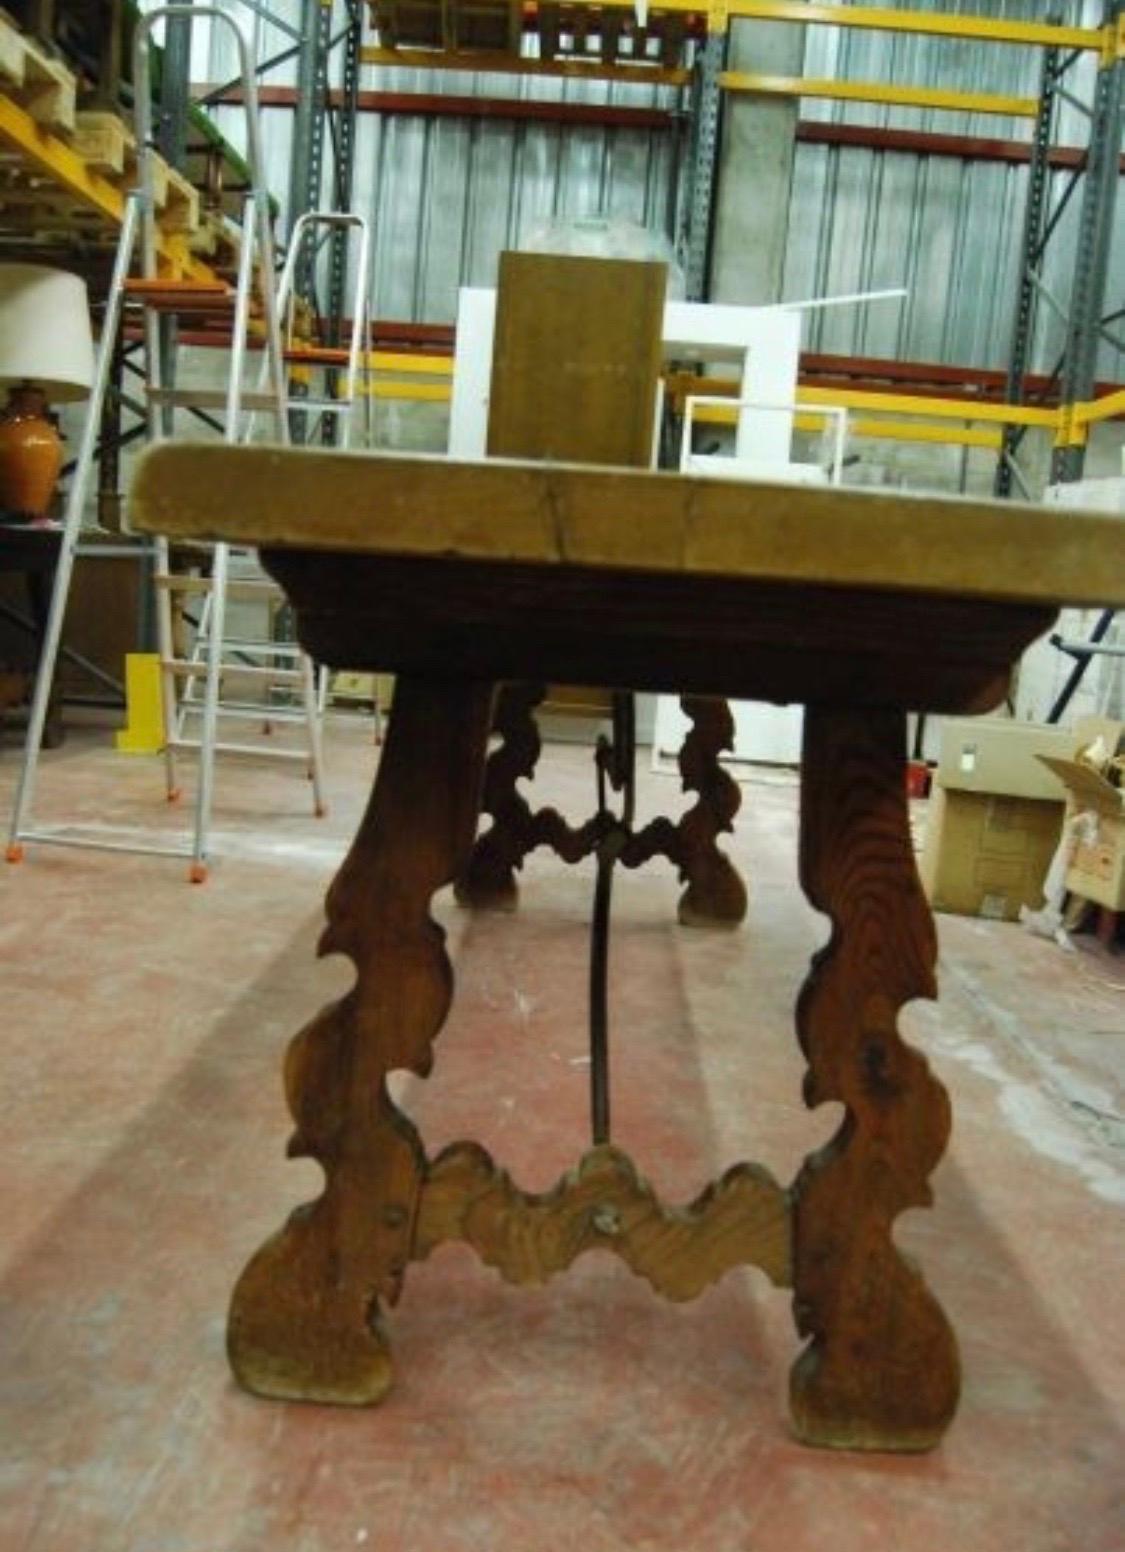 Une table à tréteaux espagnole monumentale du 19ème siècle, avec un plateau rectangulaire encadré en noyer massif, reposant sur des pieds en forme de lyre classique sculptés à la main et reliés par quatre belles civières en fer.

Cette table a été